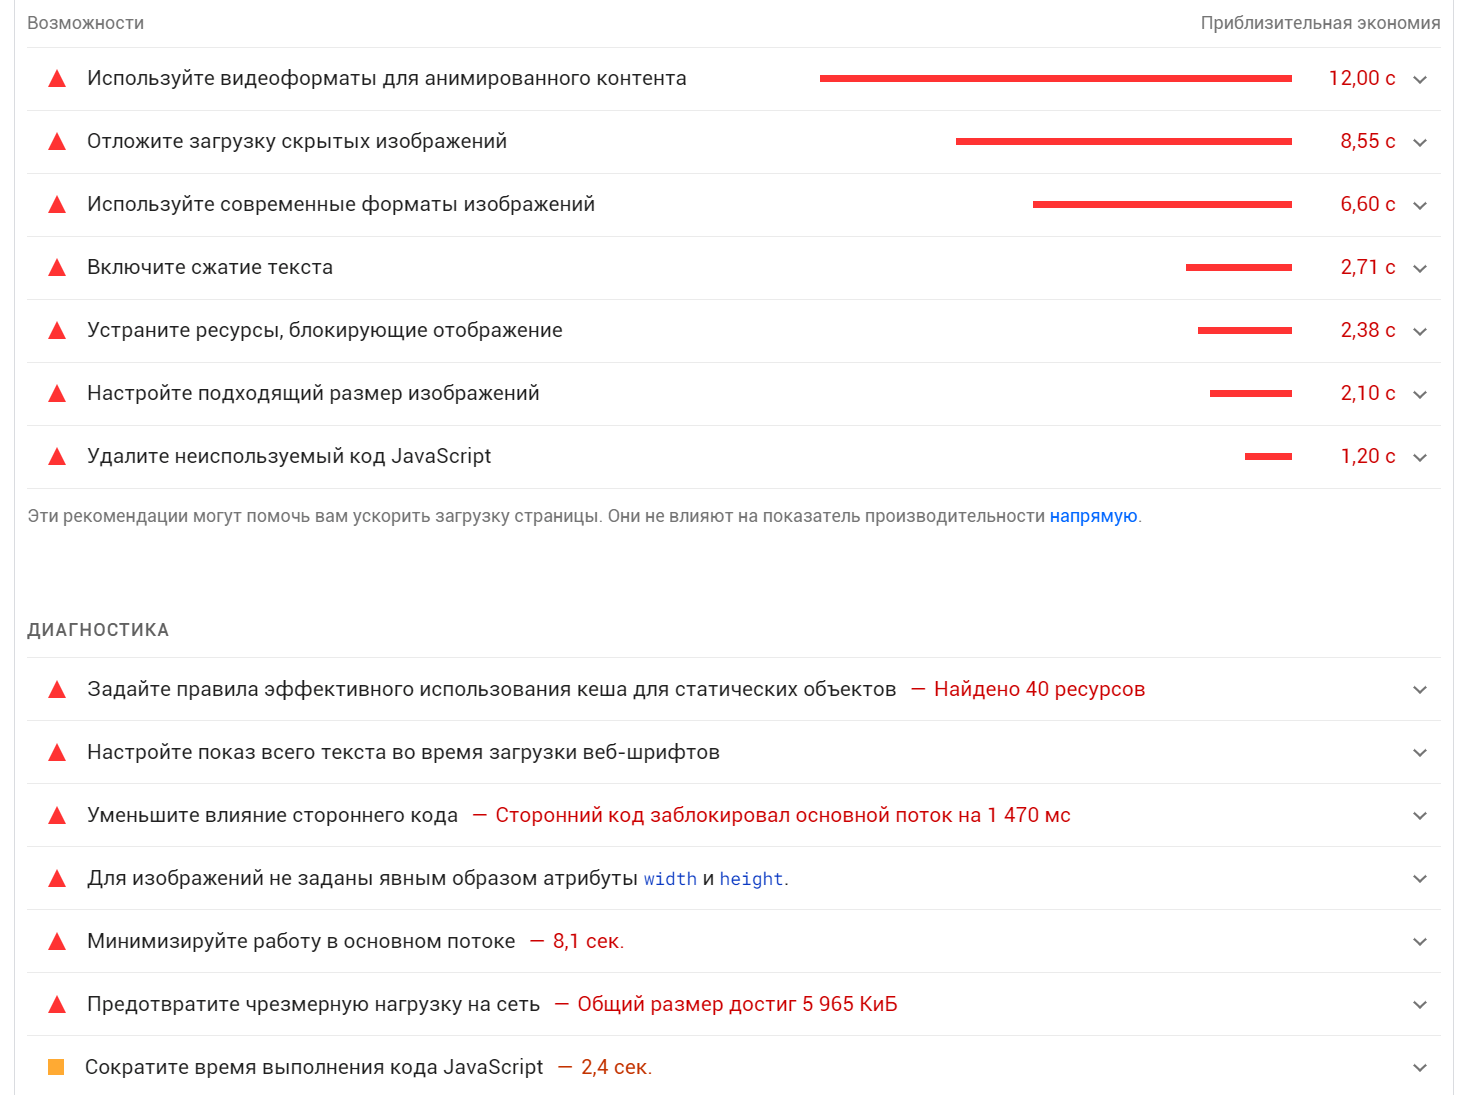 Базовые рекомендации Google по улучшению страницы сайта https://ahfire.ru/ на Тильде